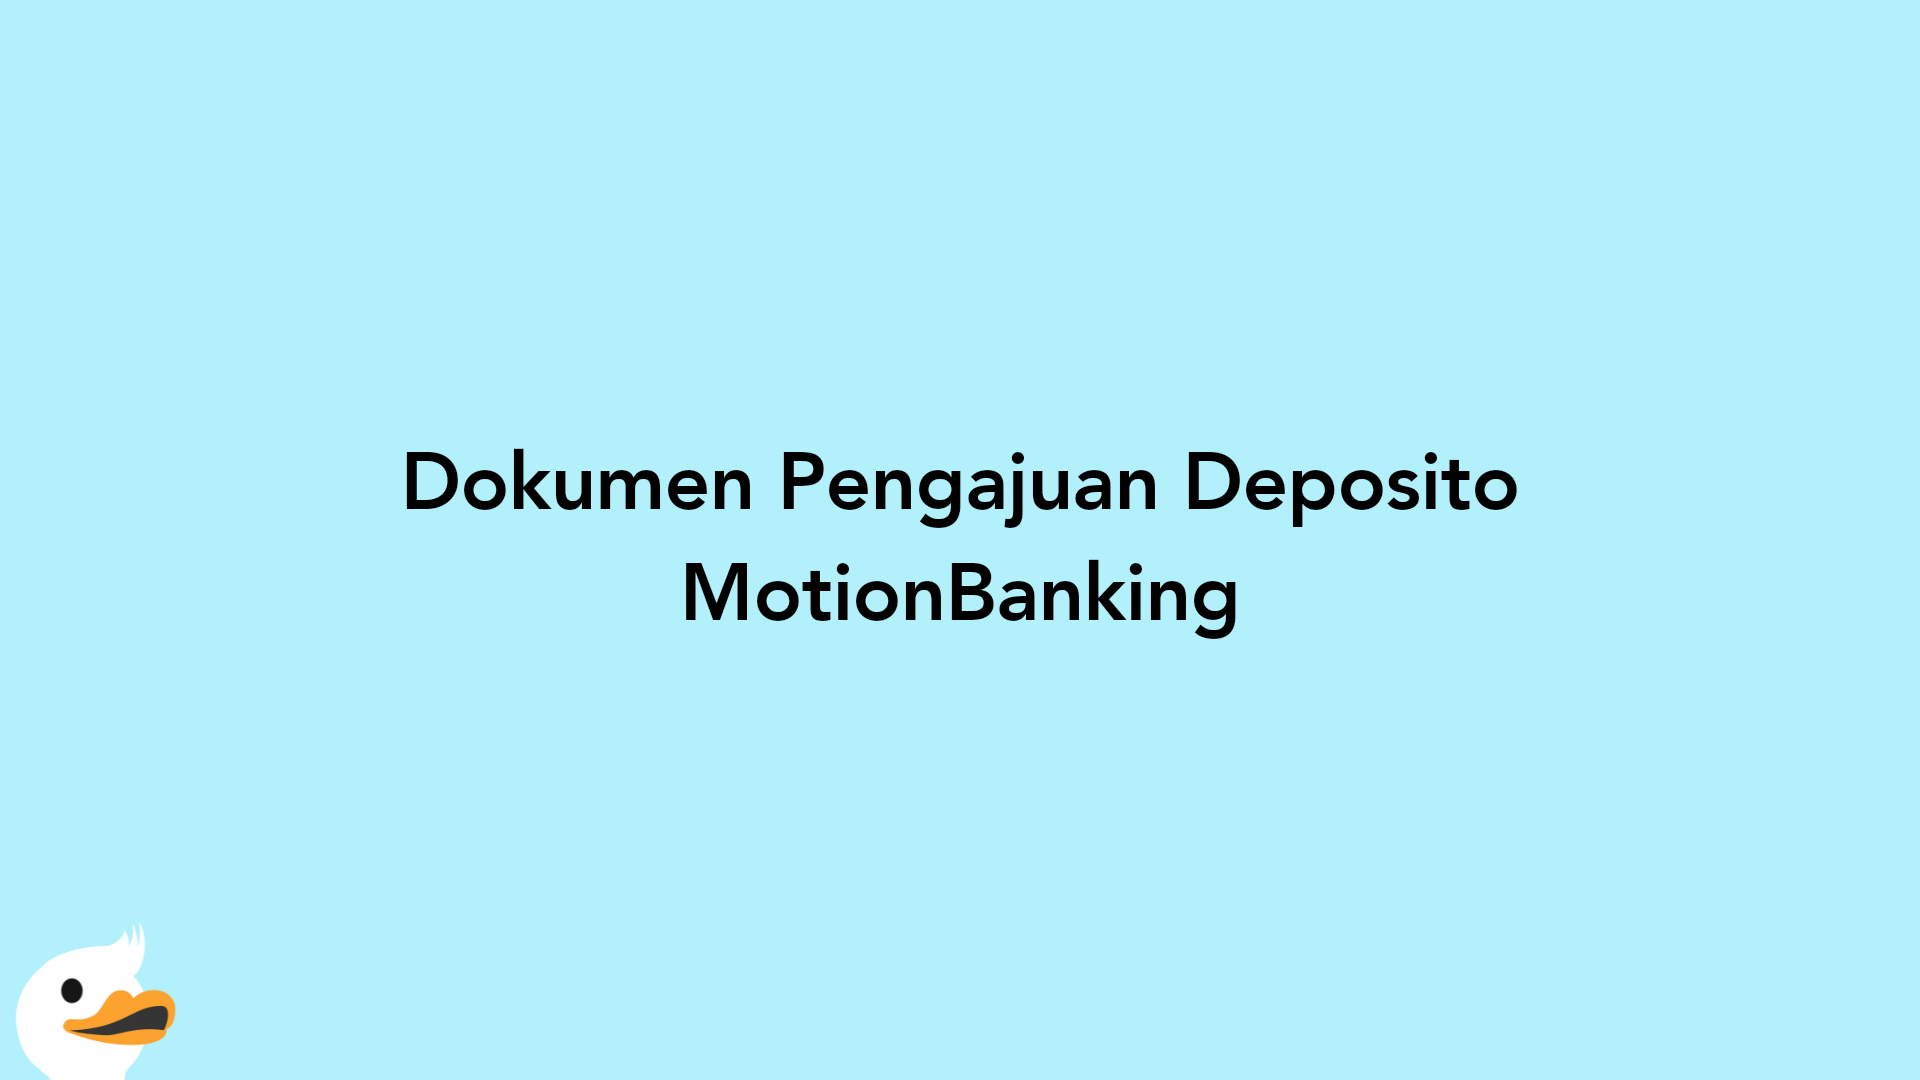 Dokumen Pengajuan Deposito MotionBanking